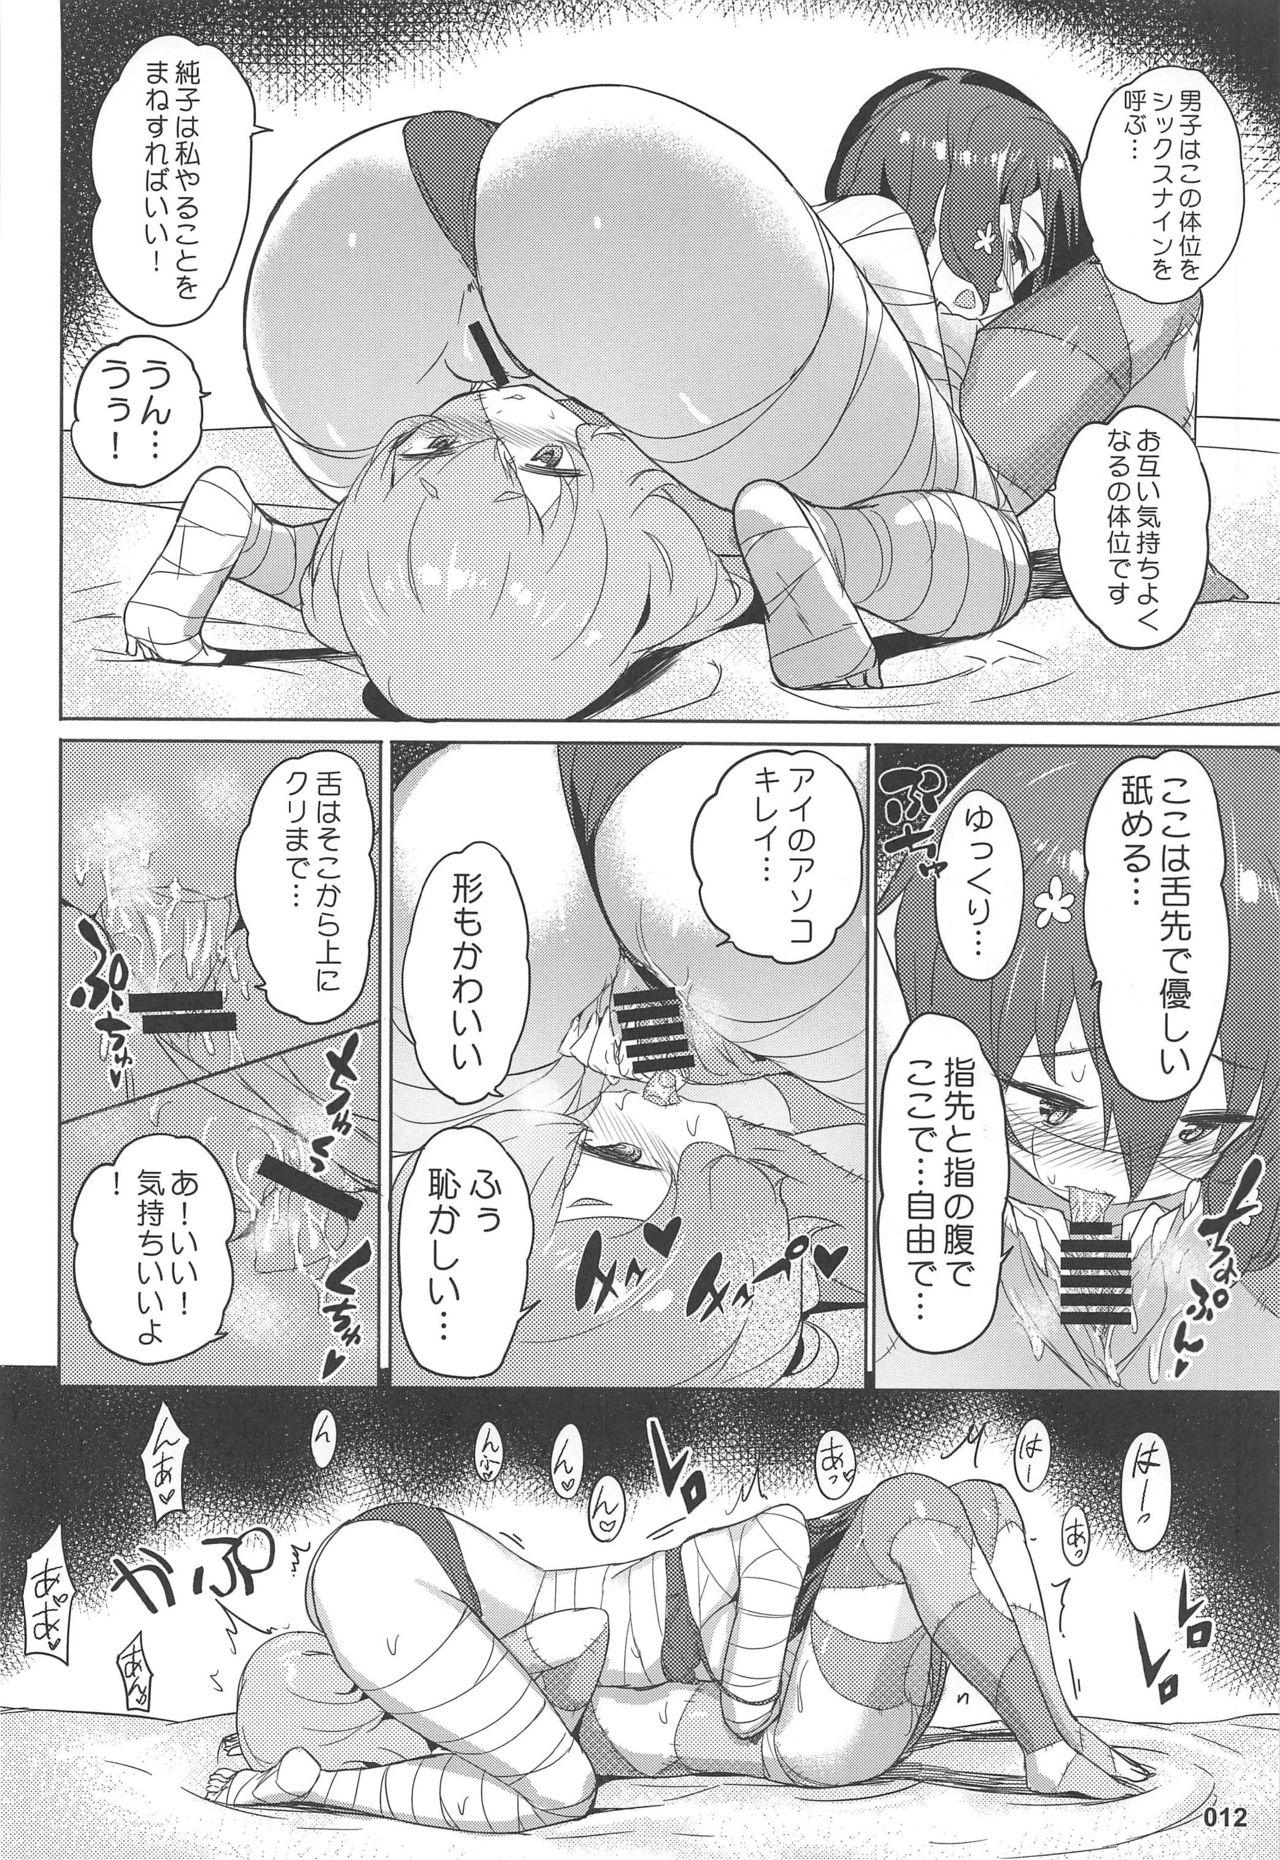 Fat Junai Bakuhatsu - Zombie land saga Adorable - Page 13